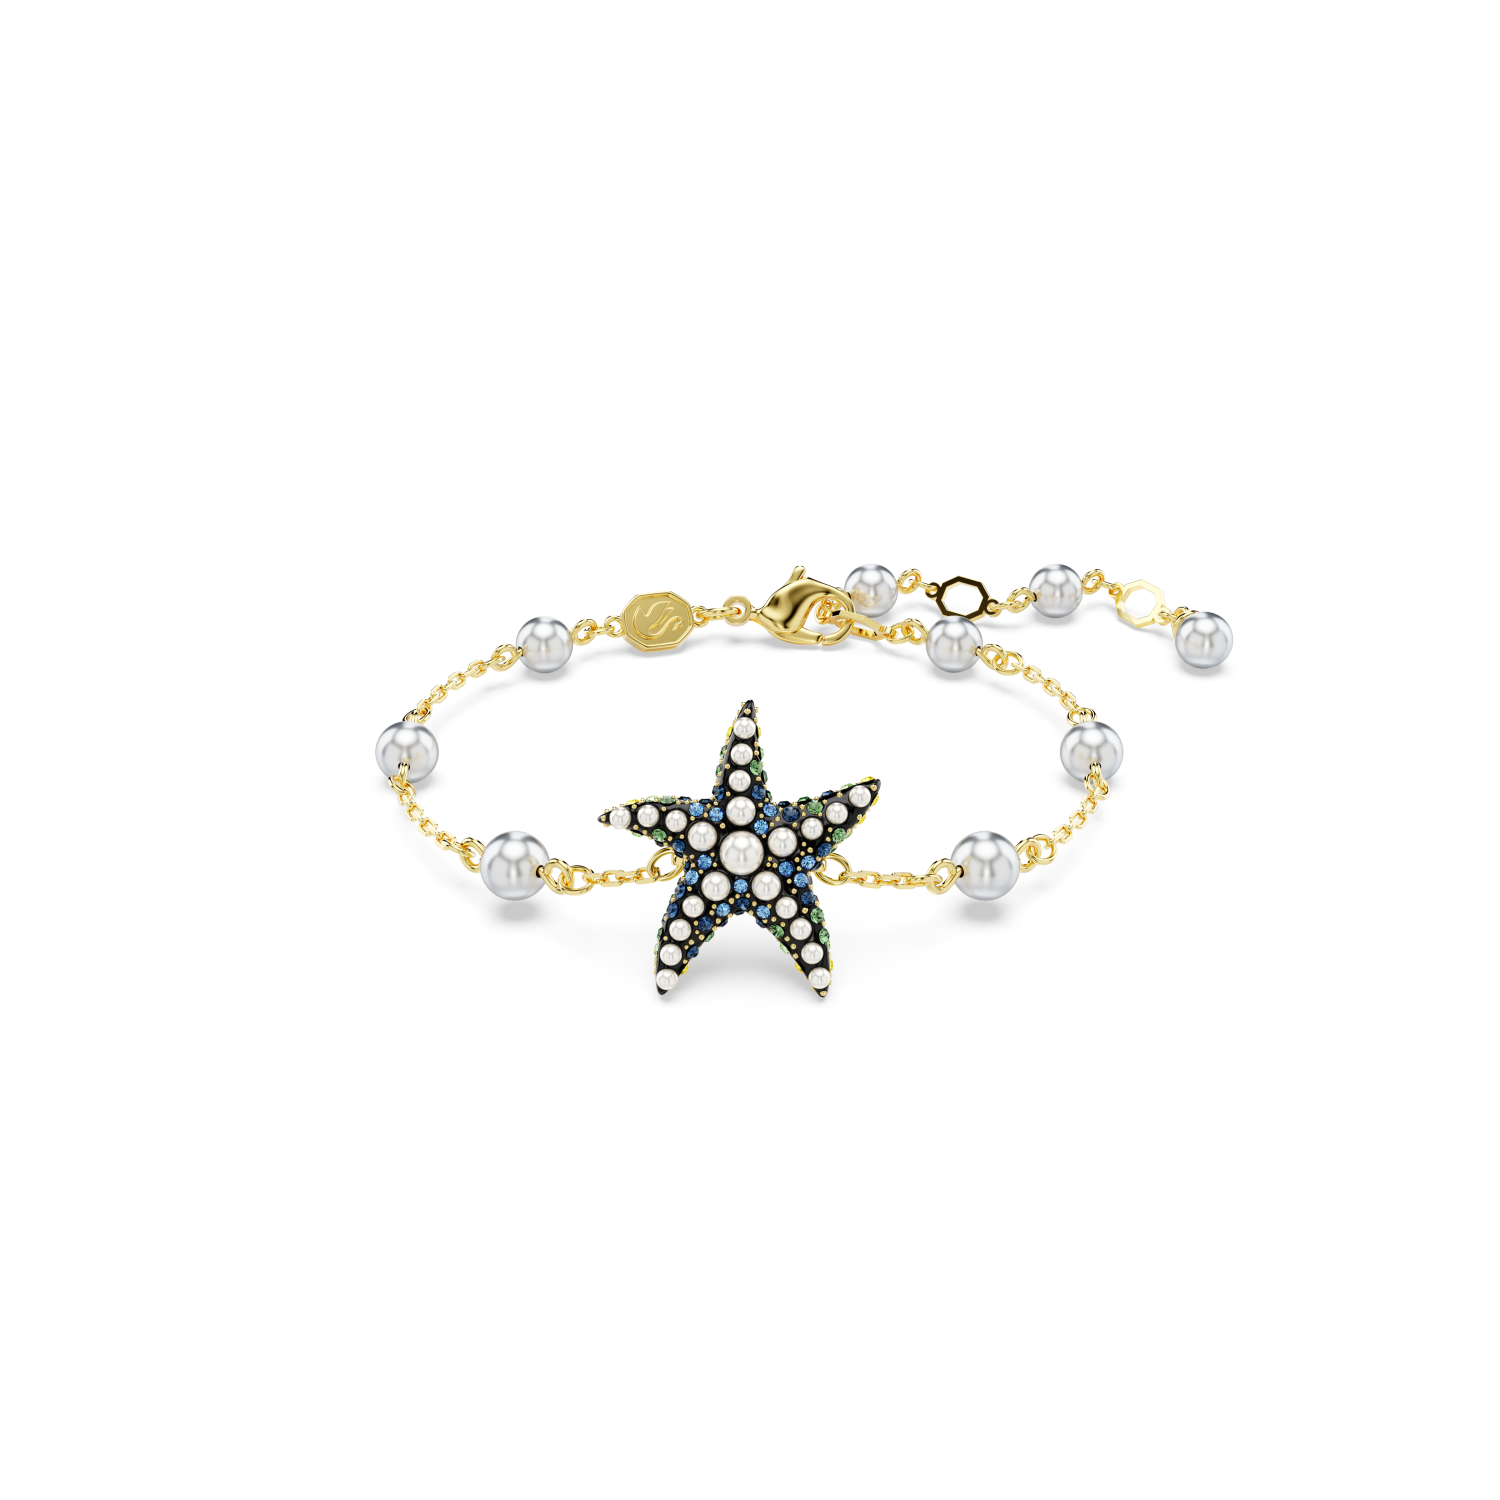 Swarovski - Braccialetto Idyllia, Crystal pearls, Stella marina, Multicolore, Placcato color oro Ref. 5684398 - SWAROVSKI